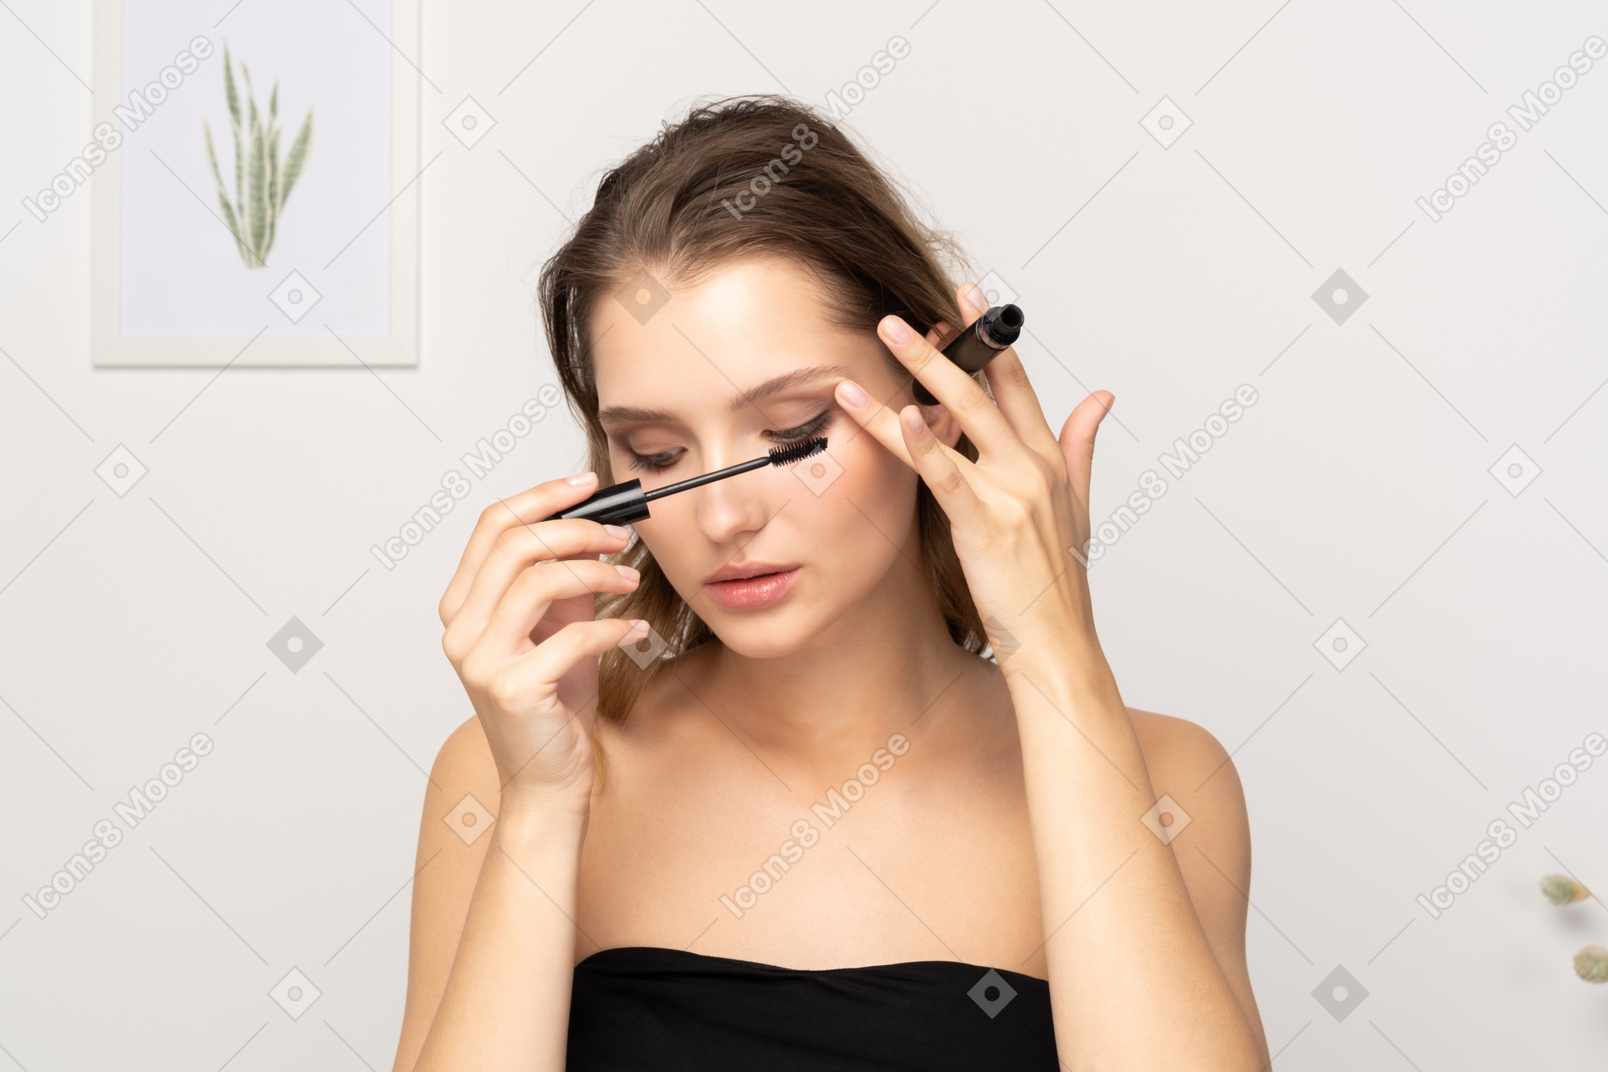 Vue de face d'une jeune femme portant un haut noir appliquant du mascara